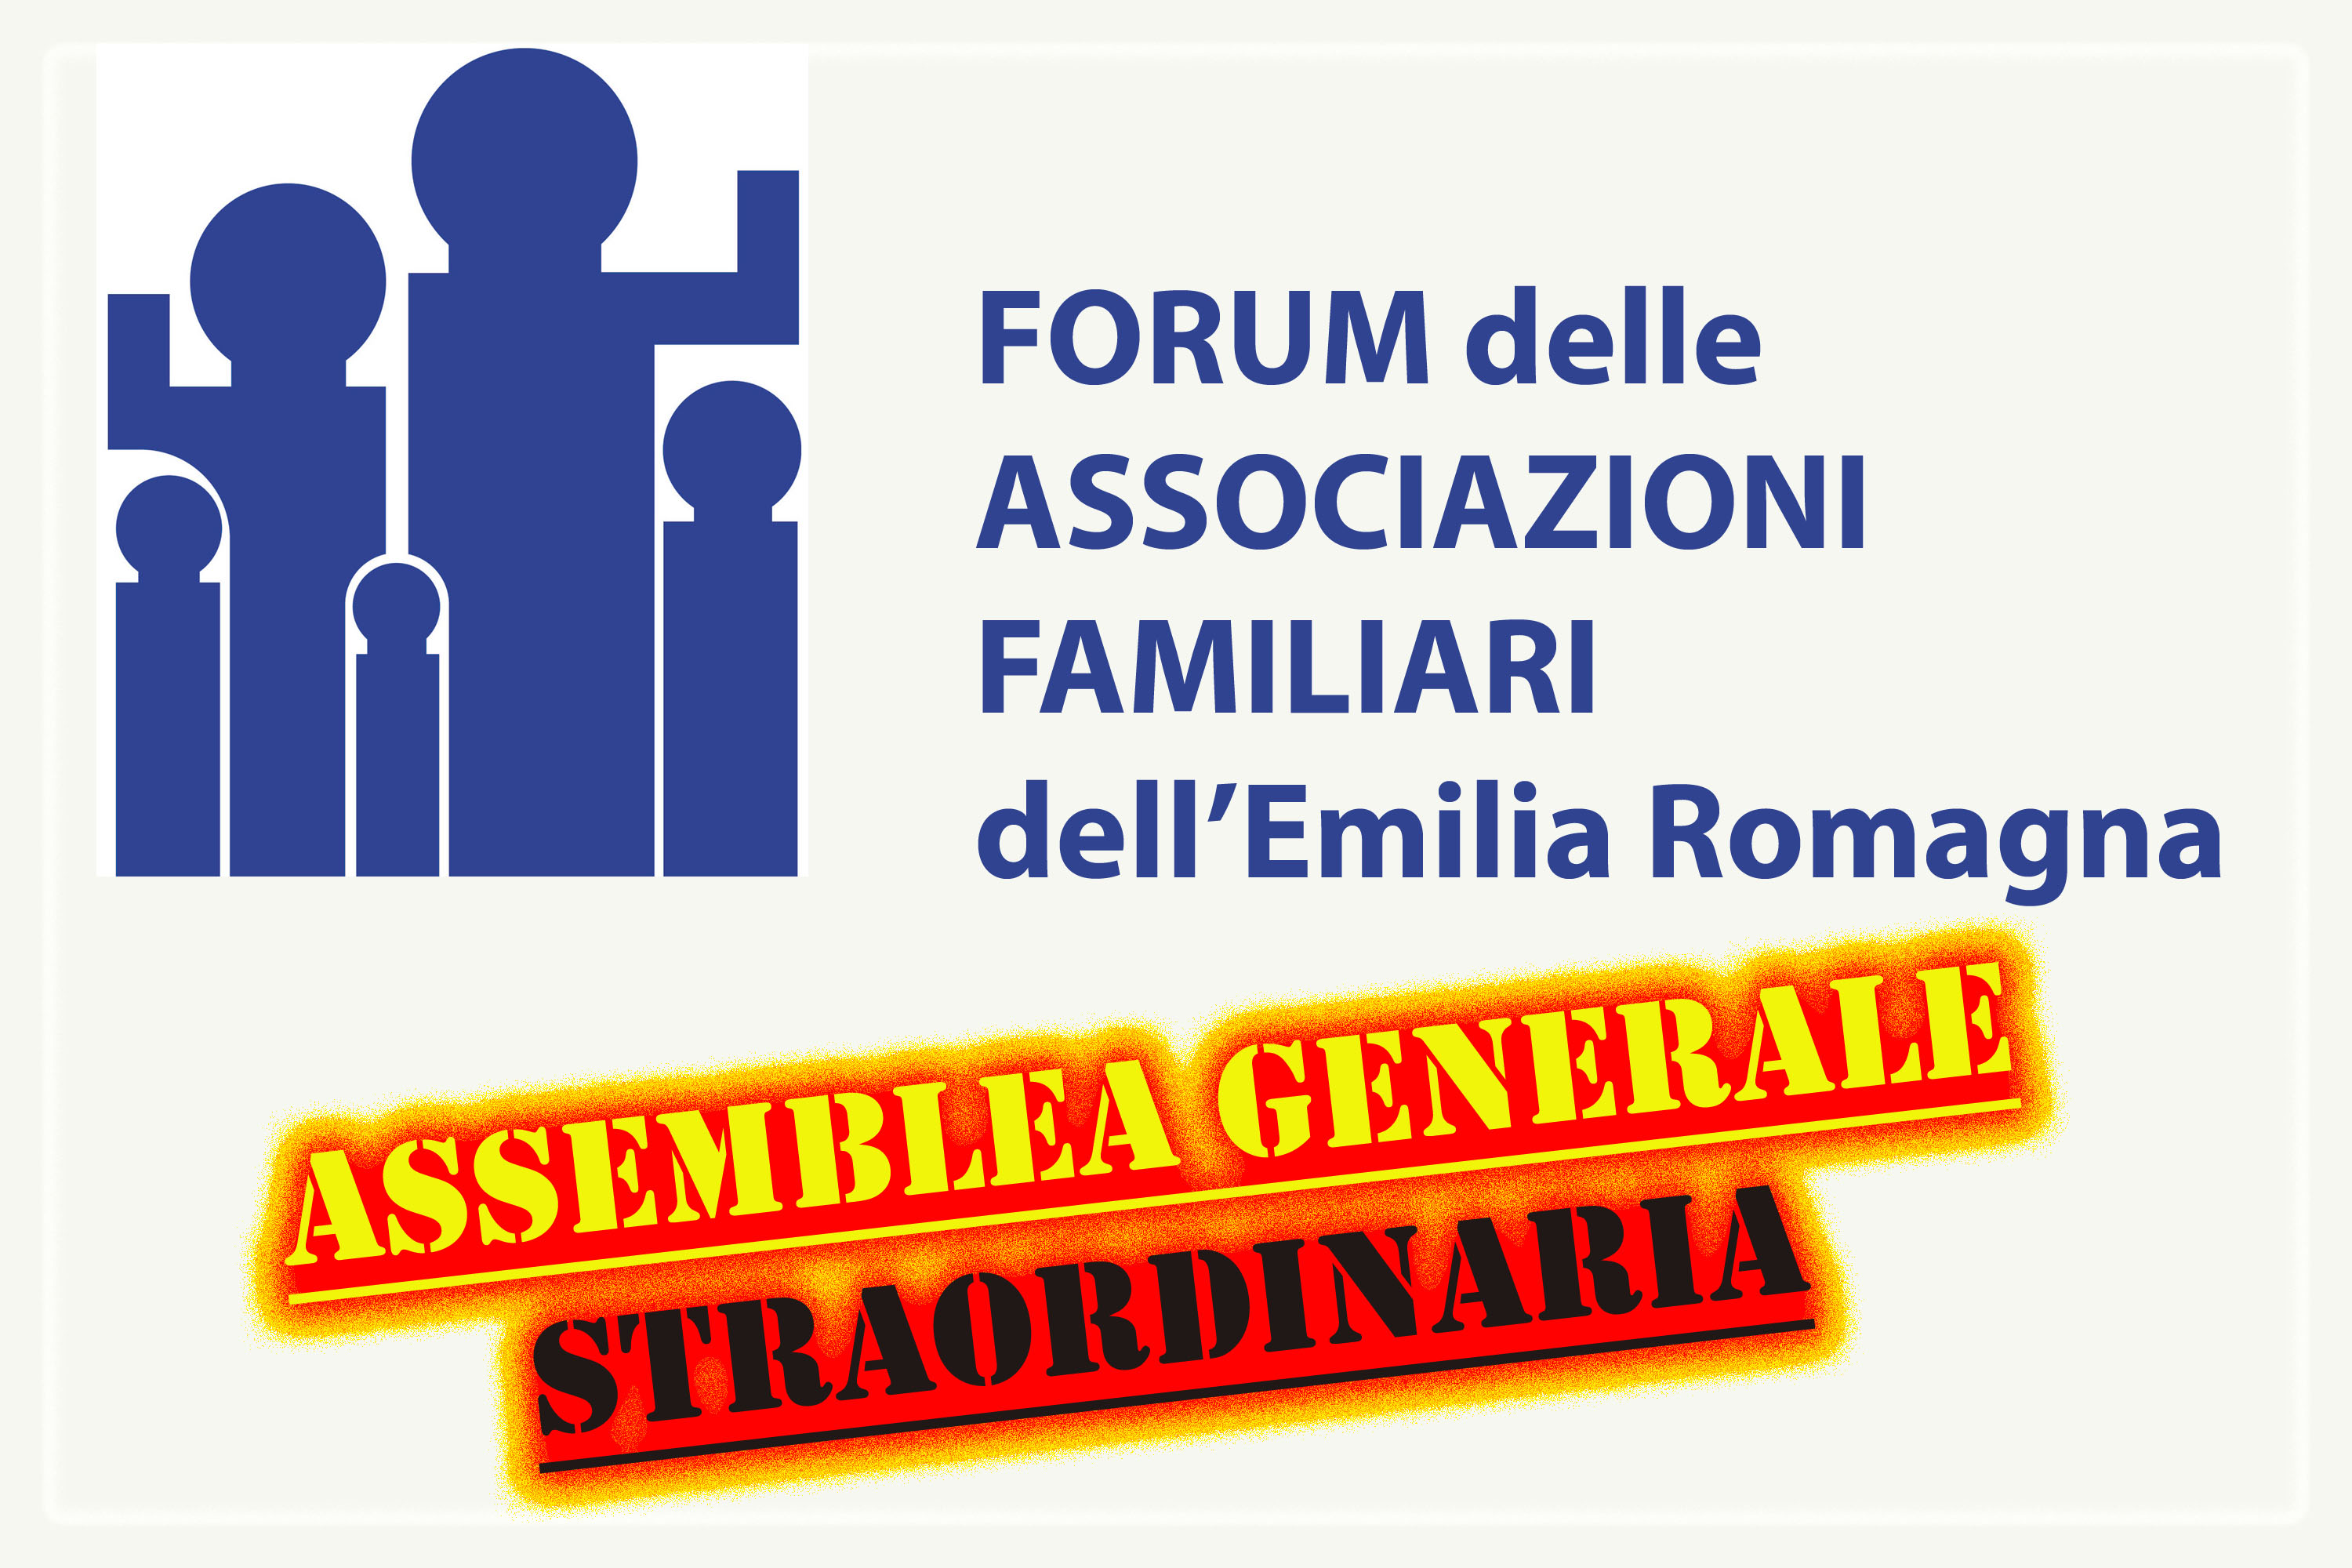 Forum delle Associazioni Familiari Assemblea generale straordinaria